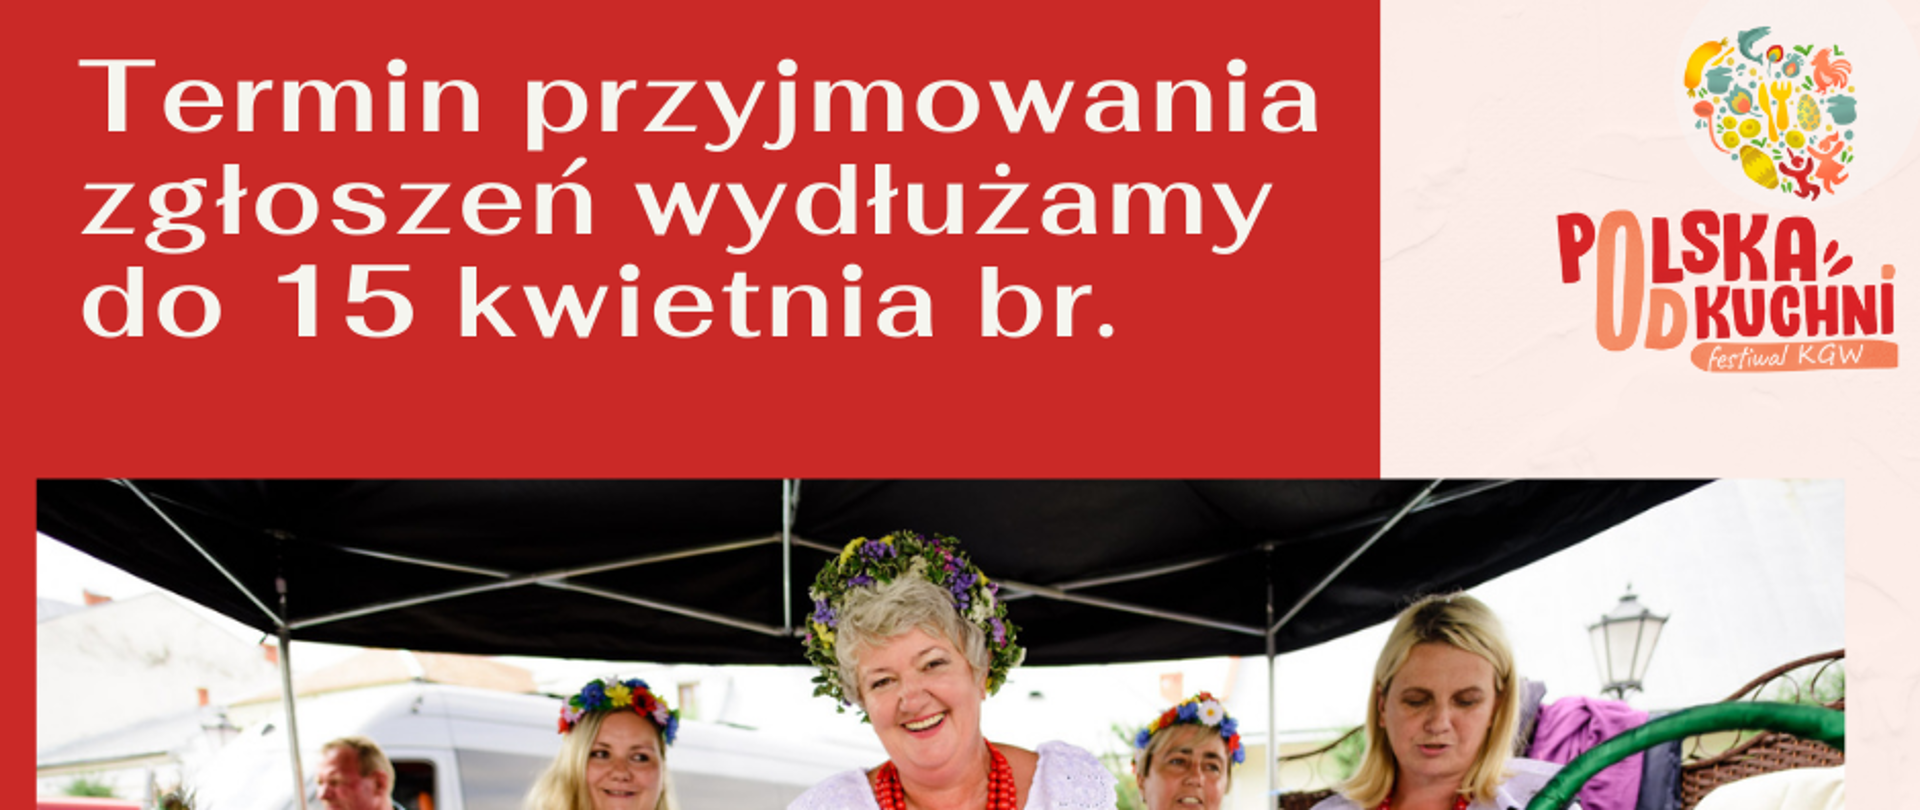 plakat Polska od kuchni